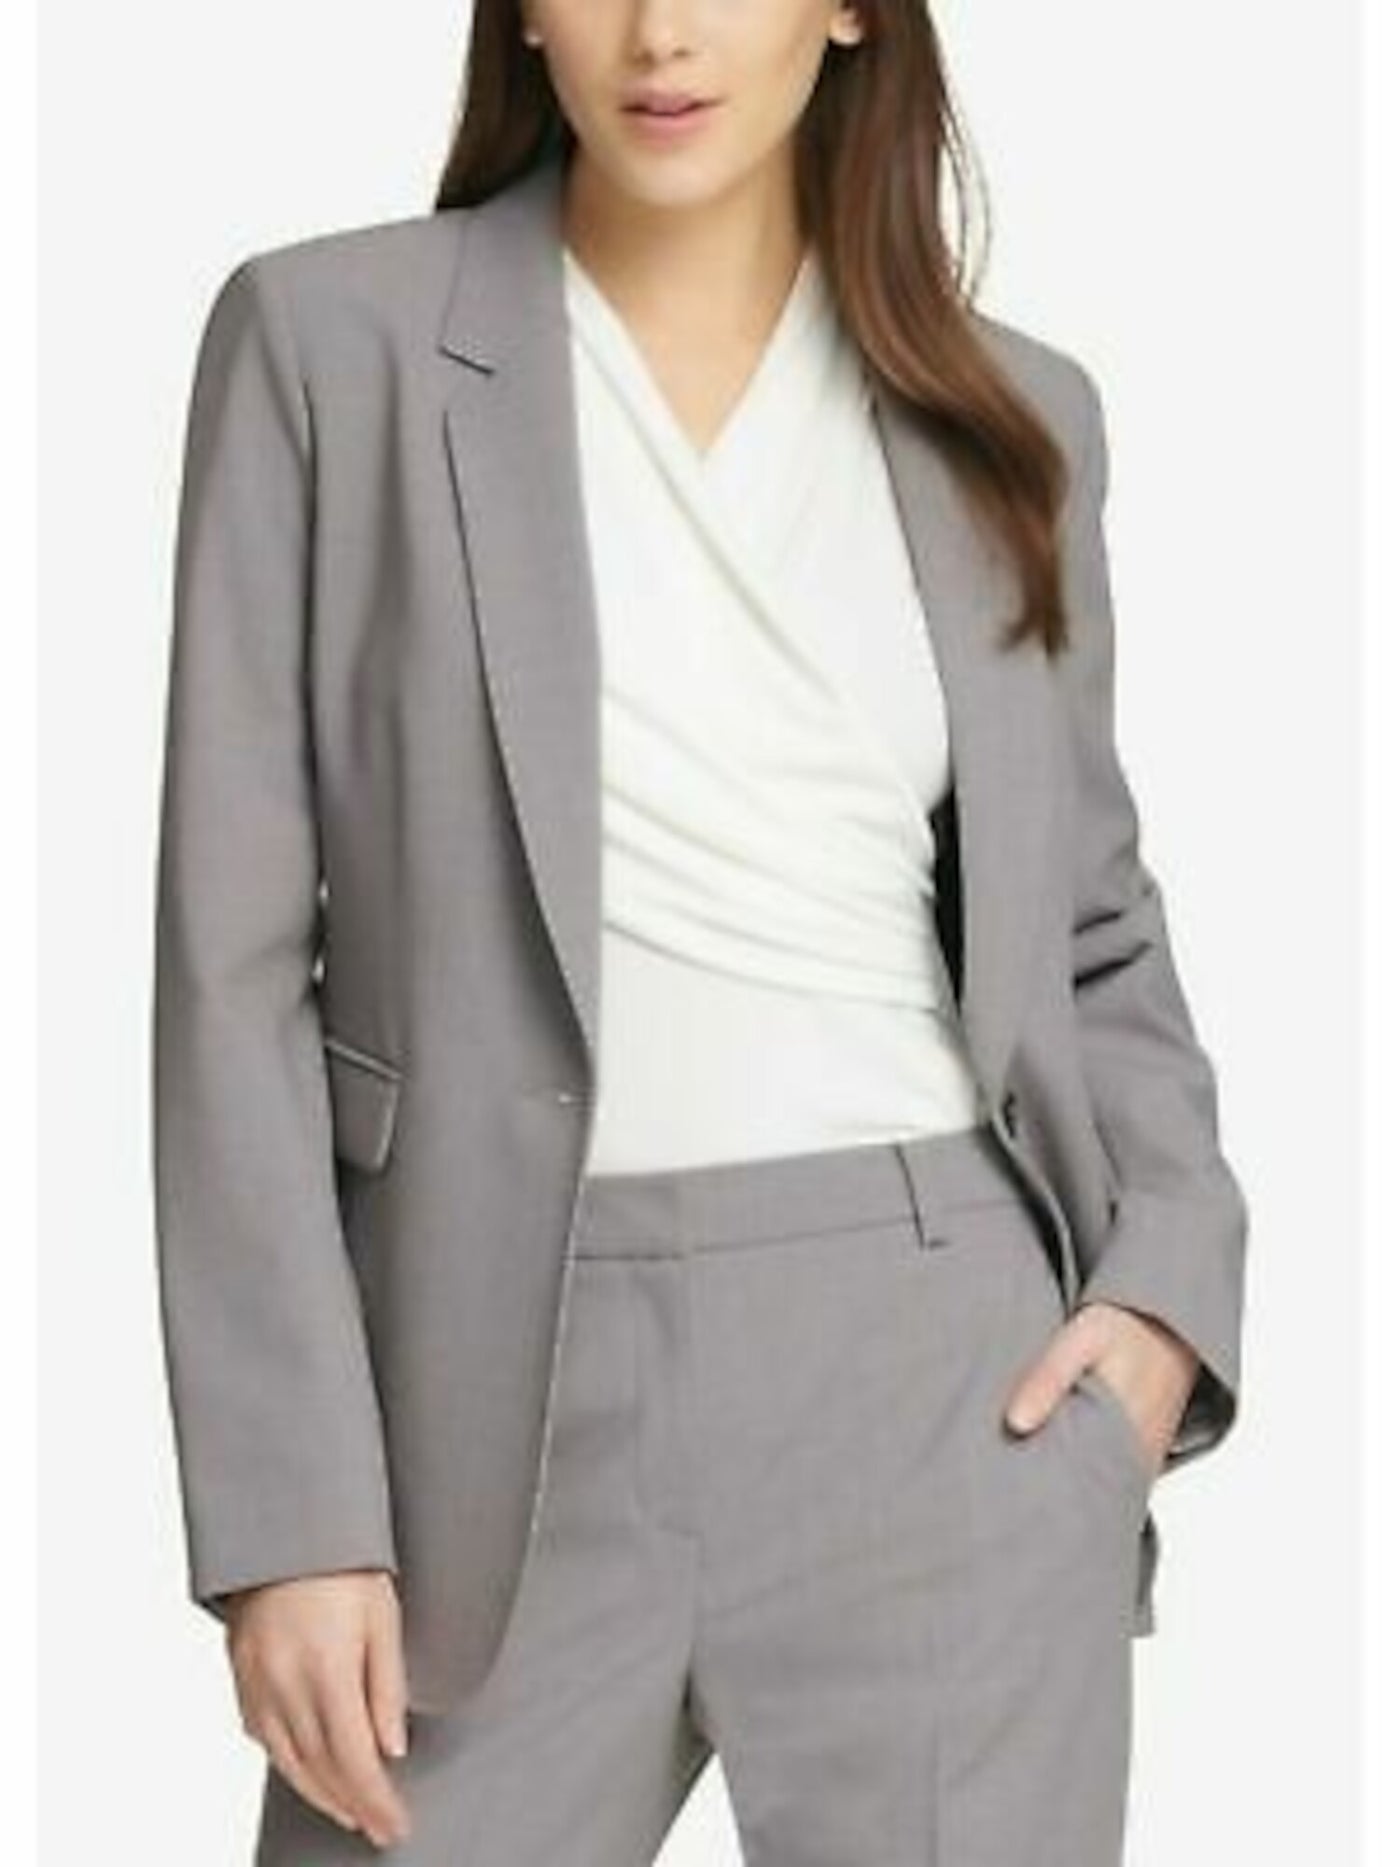 DKNY Womens Wear To Work Blazer Jacket